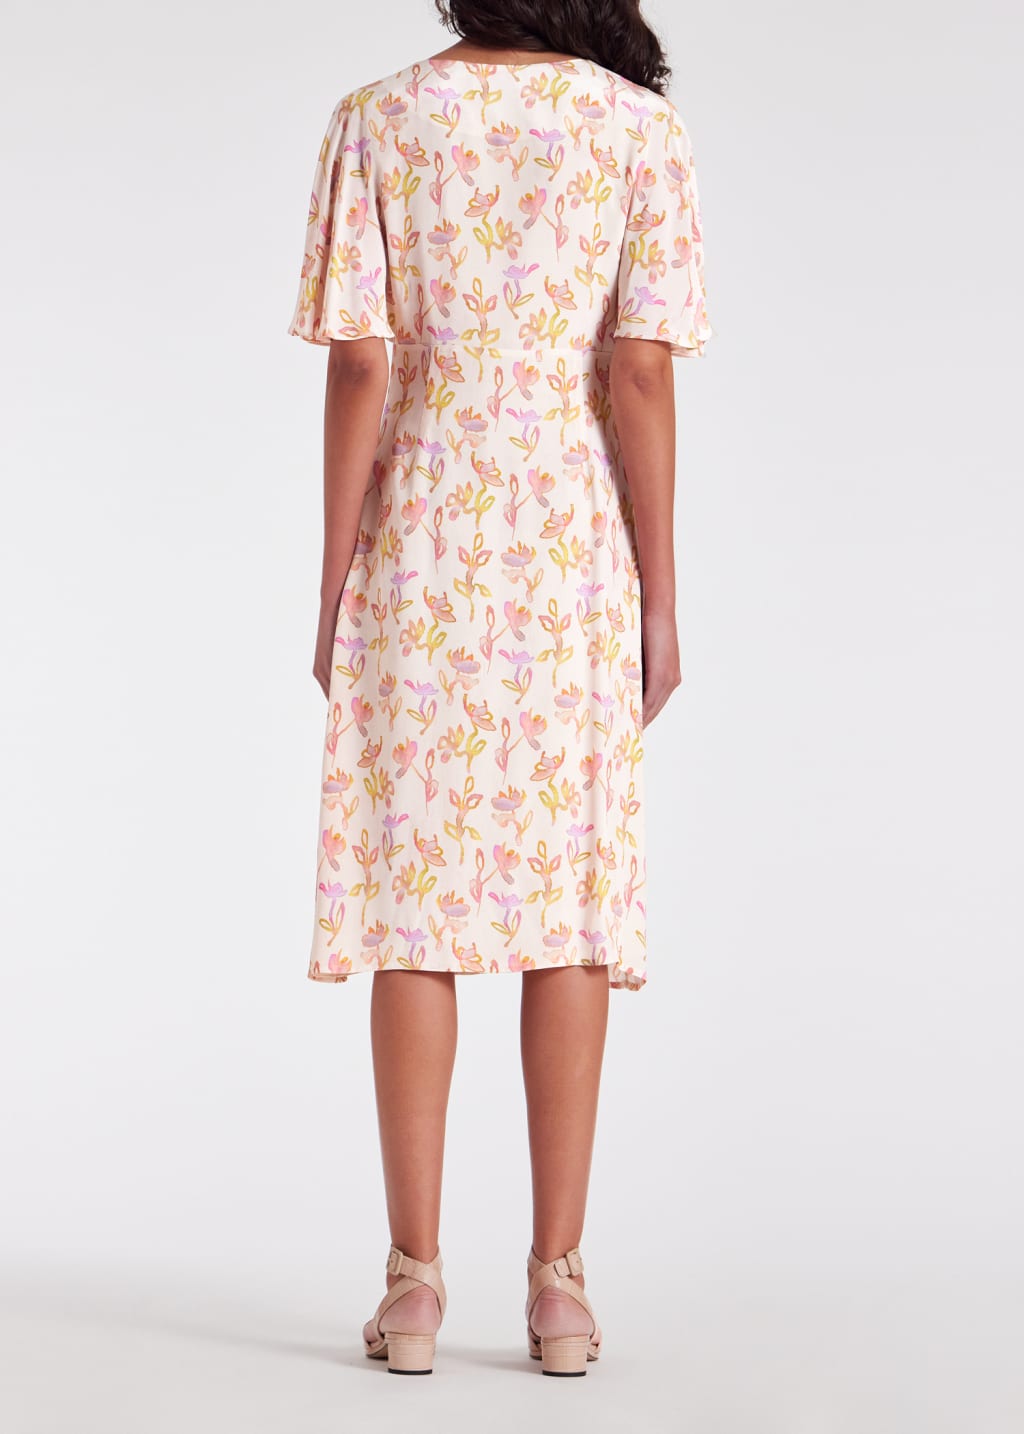 Model View - Women's Ecru 'Oleander' Dress Paul Smith